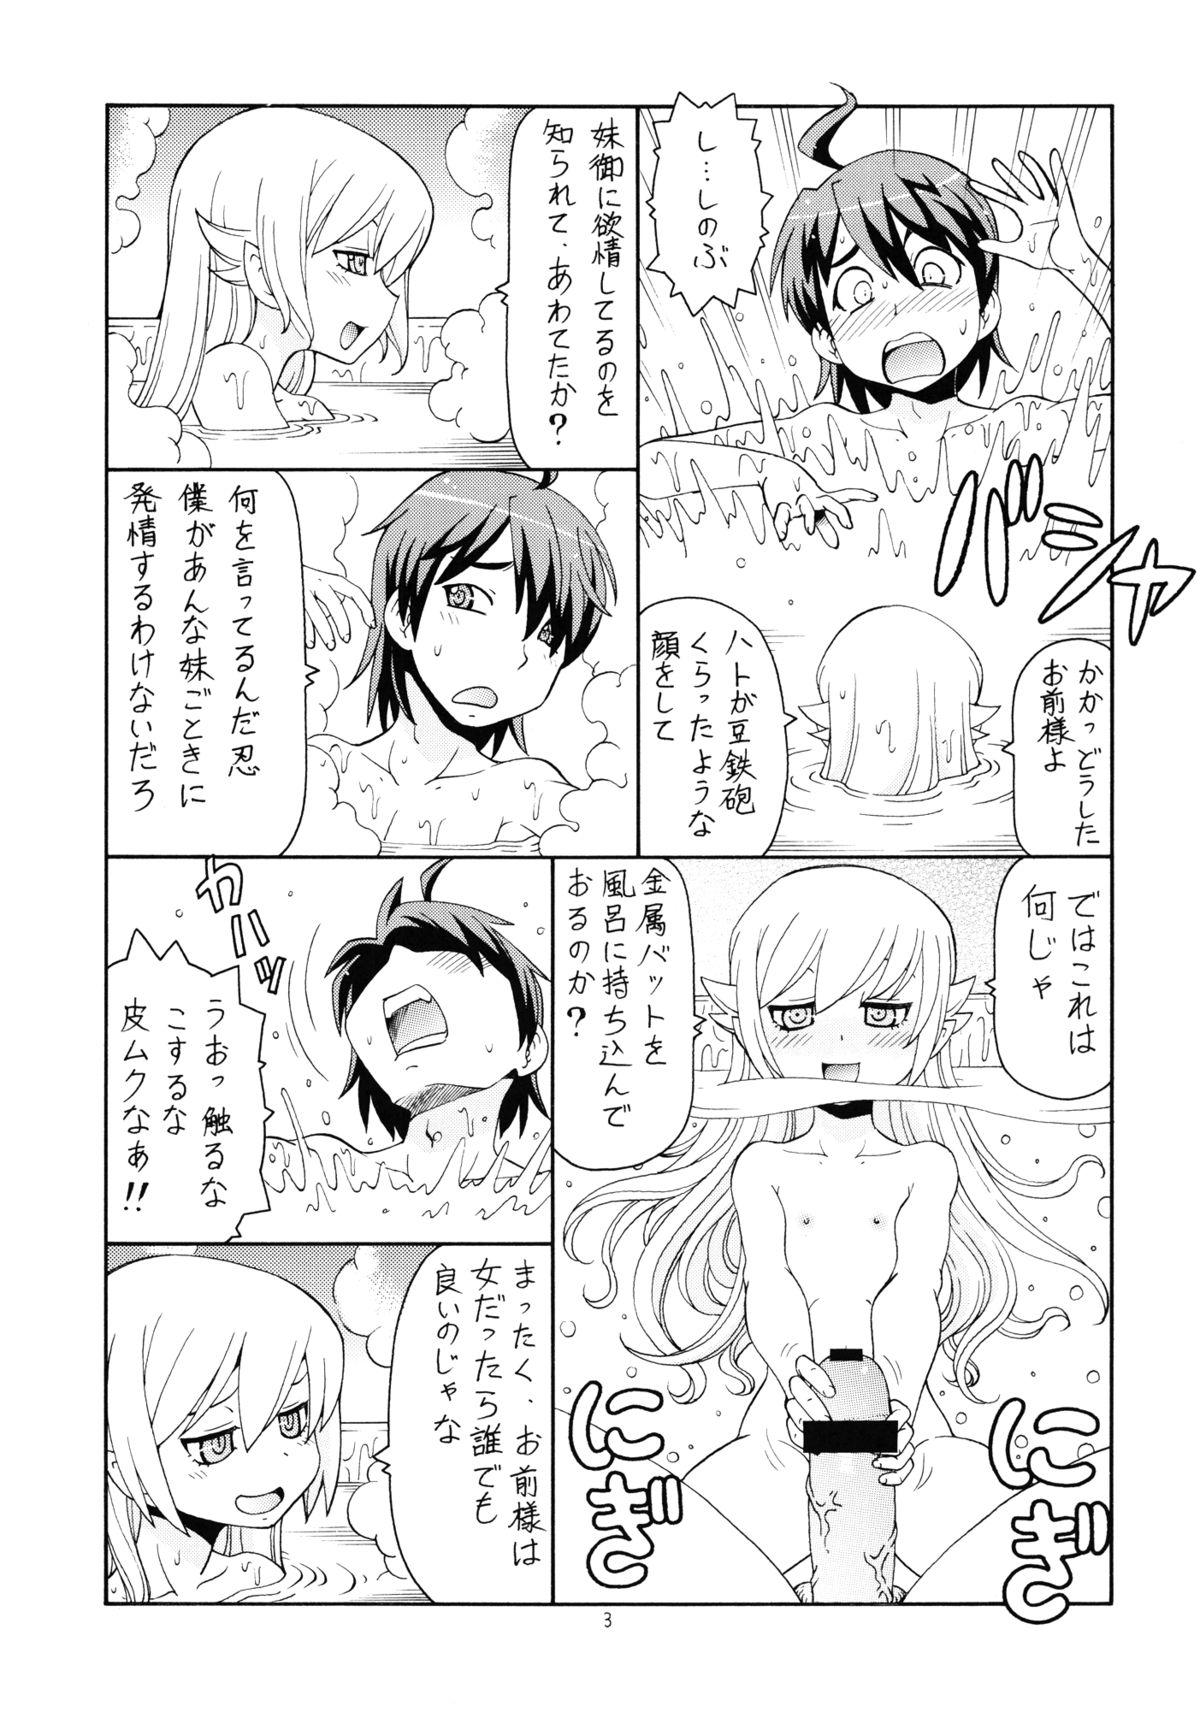 Tesao Hito ni Hakanai to Kaite "Araragi" to Yomu 5&6 - Bakemonogatari Hard Sex - Page 4